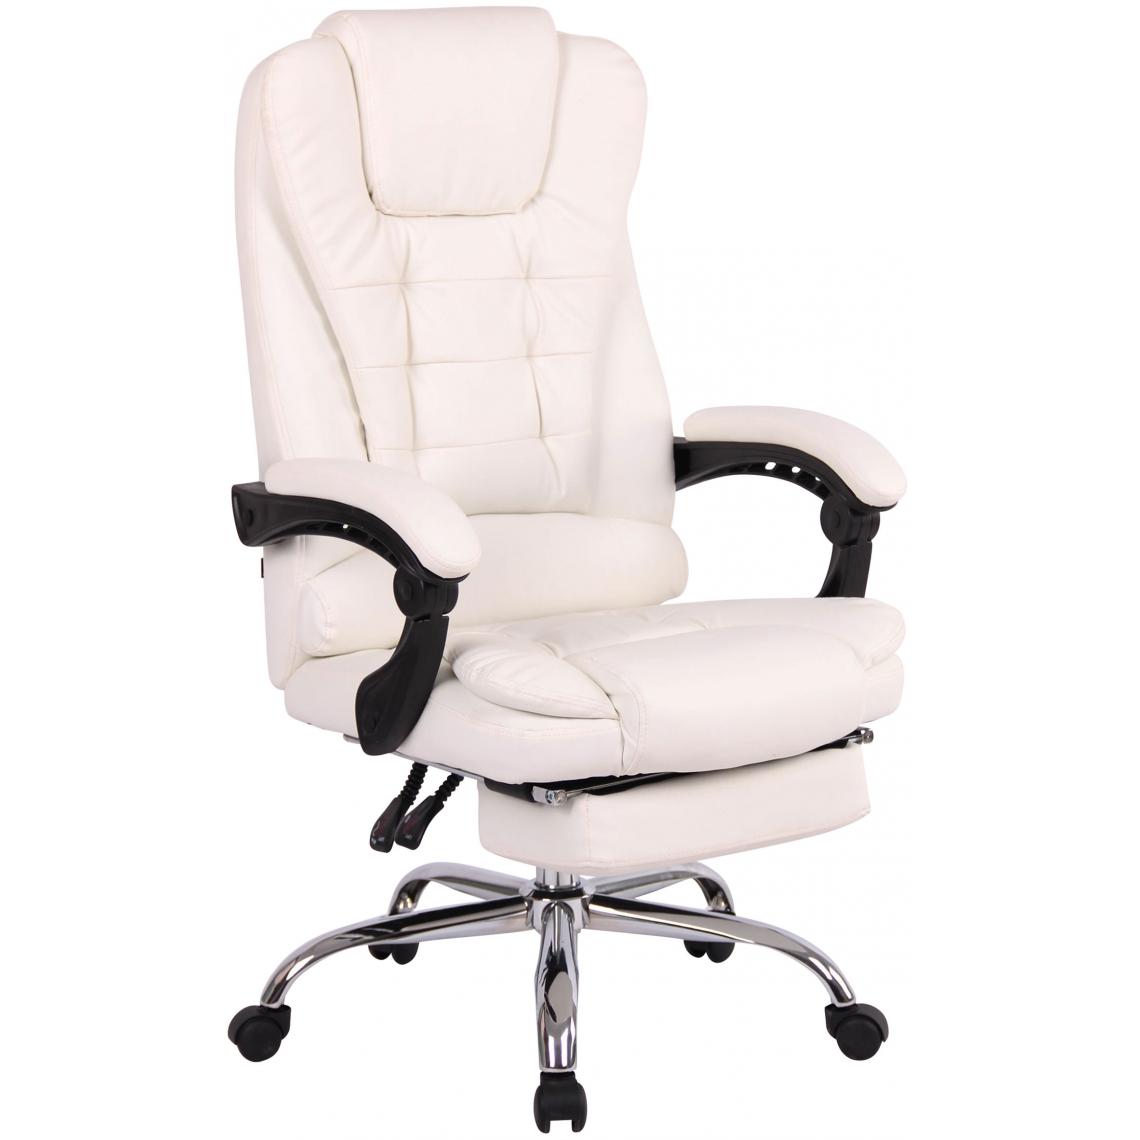 Icaverne - Contemporain Chaise de bureau categorie Varsovie simili cuir couleur blanc - Chaises